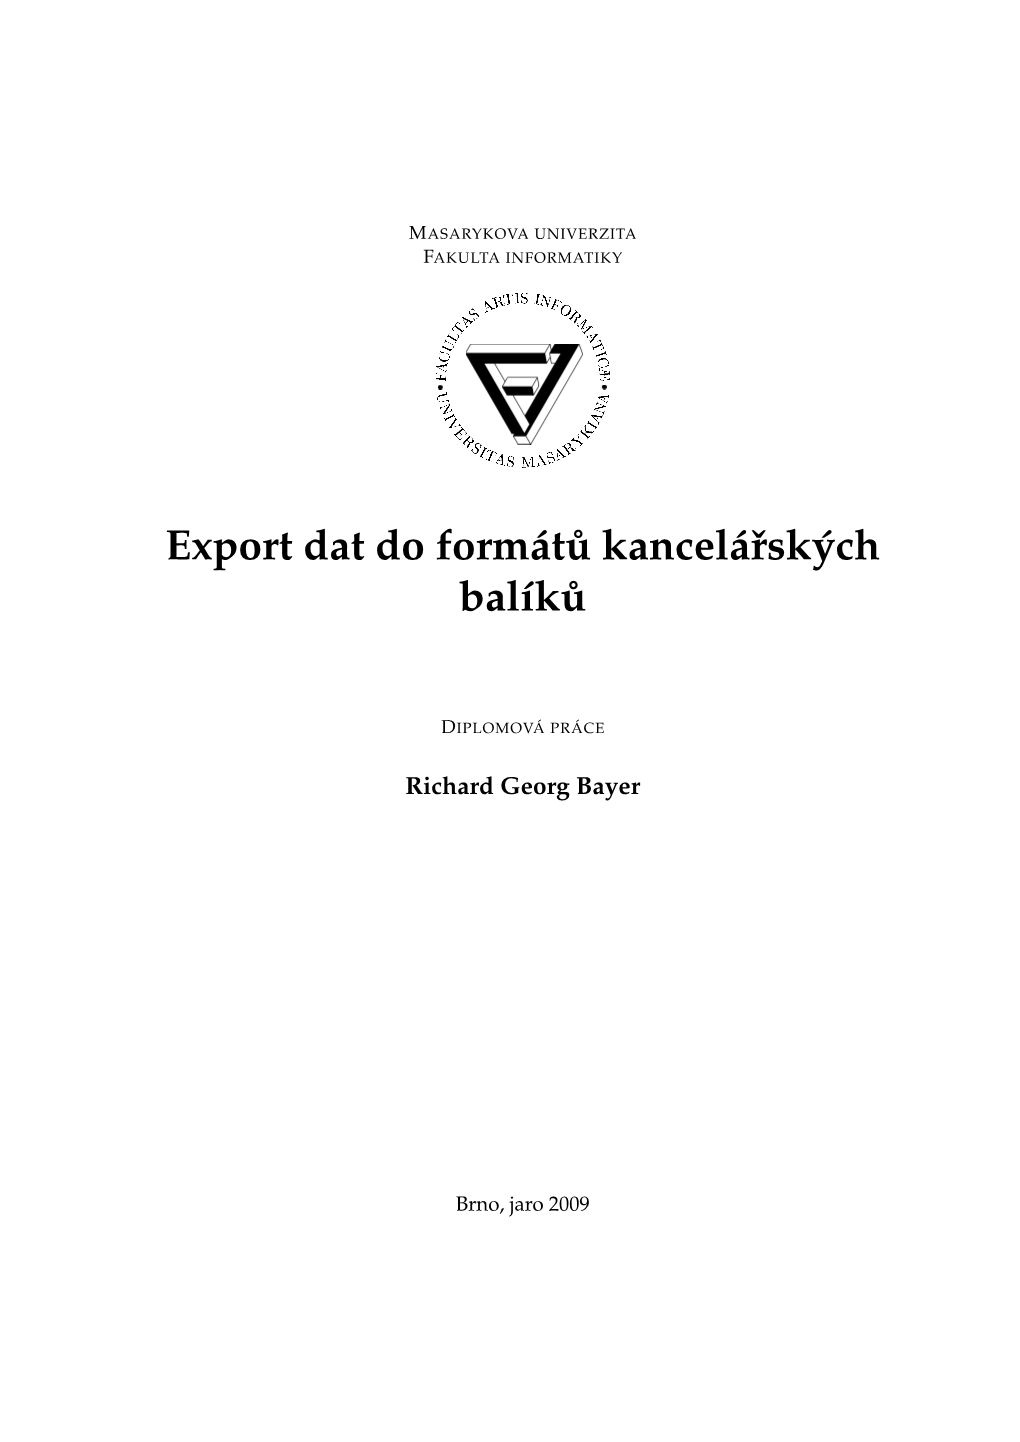 Export Dat Do Formát ˚U Kancelárských Balík ˚U